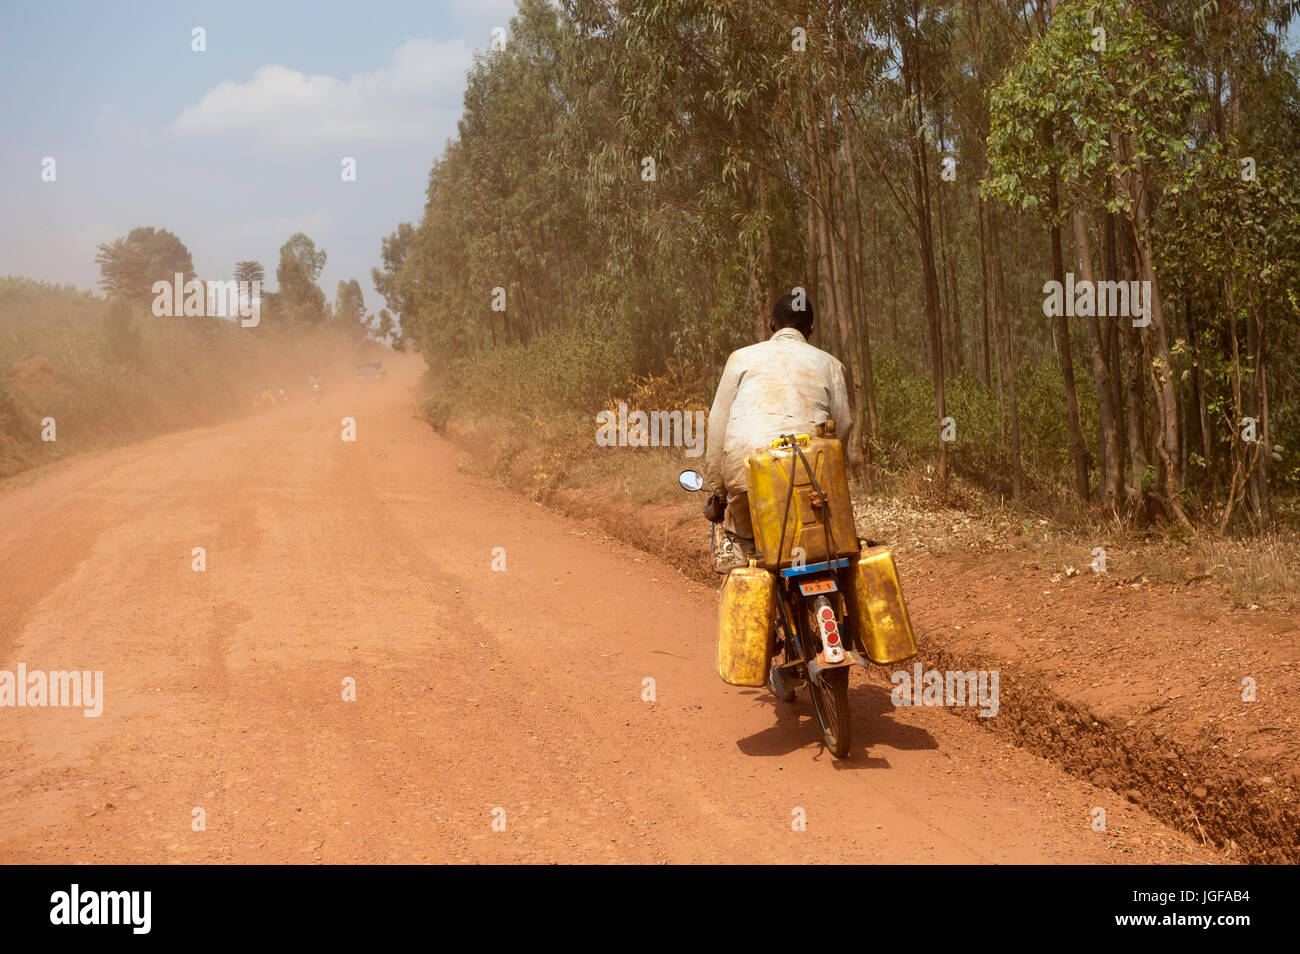 L'homme sur une moto transportant des conteneurs d'eau le long d'une route poussiéreuse, le Rwanda. Banque D'Images